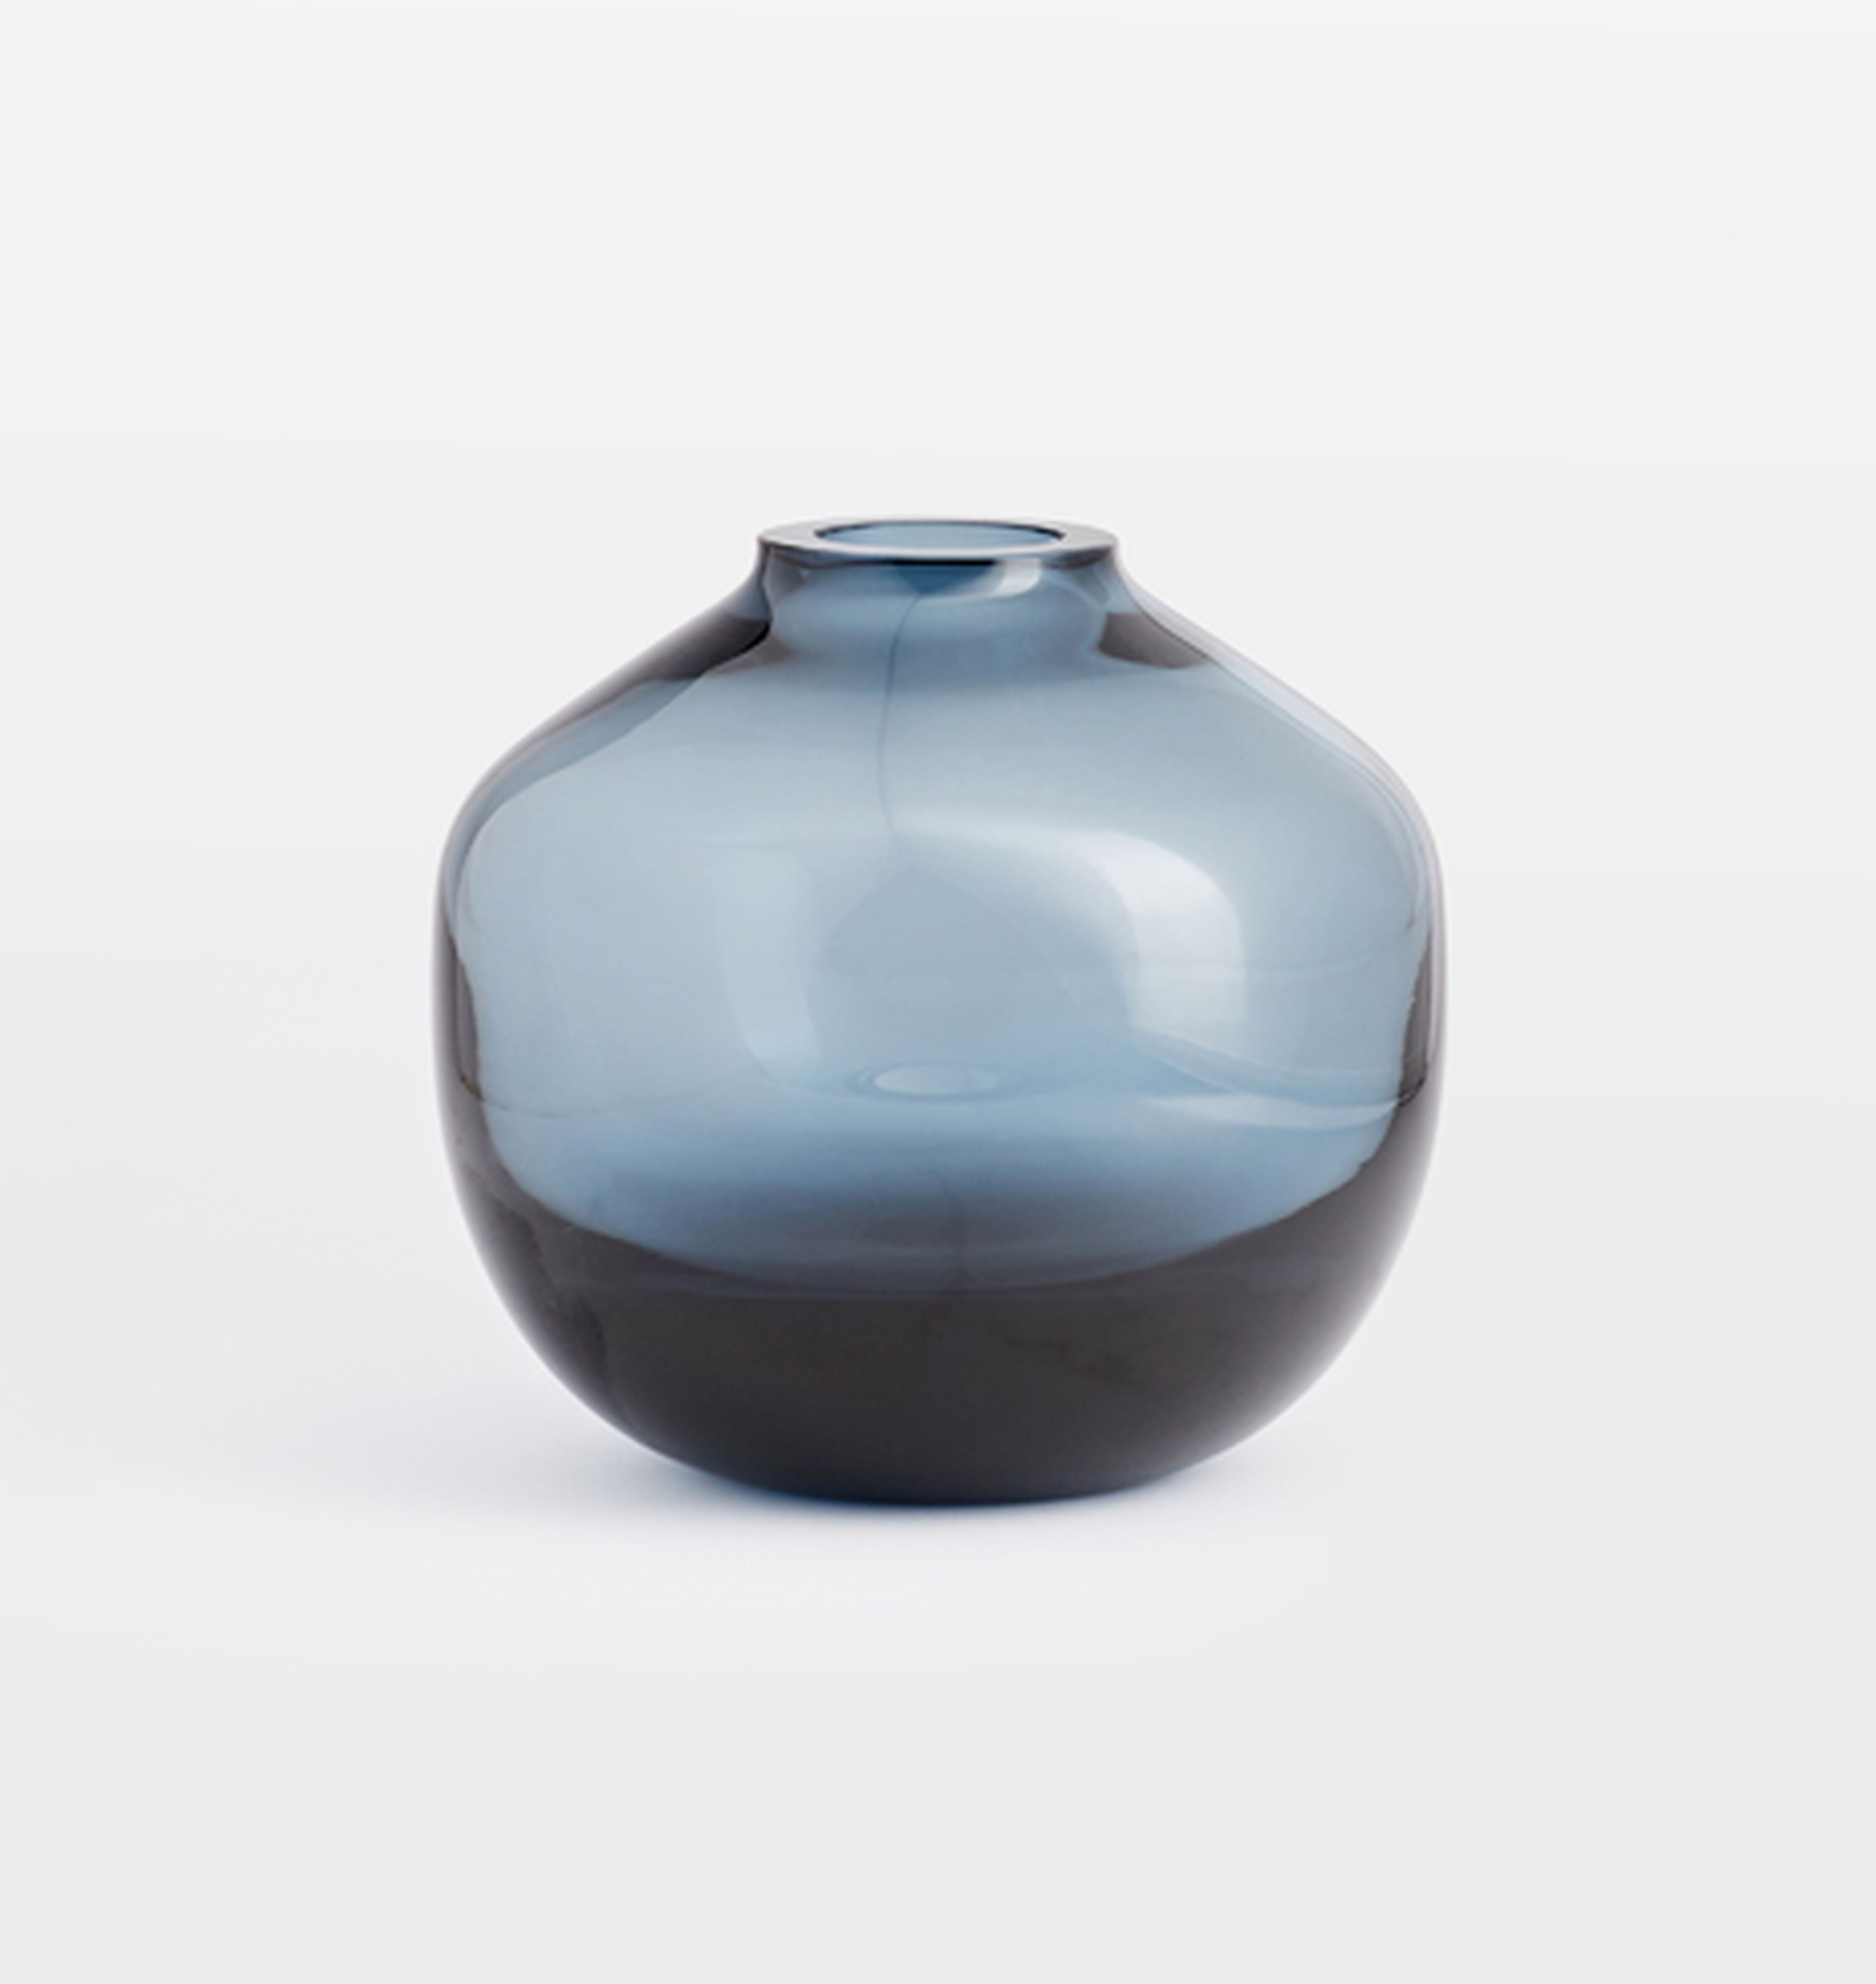 Audrey Low Round Blue Glass Vase - Rejuvenation